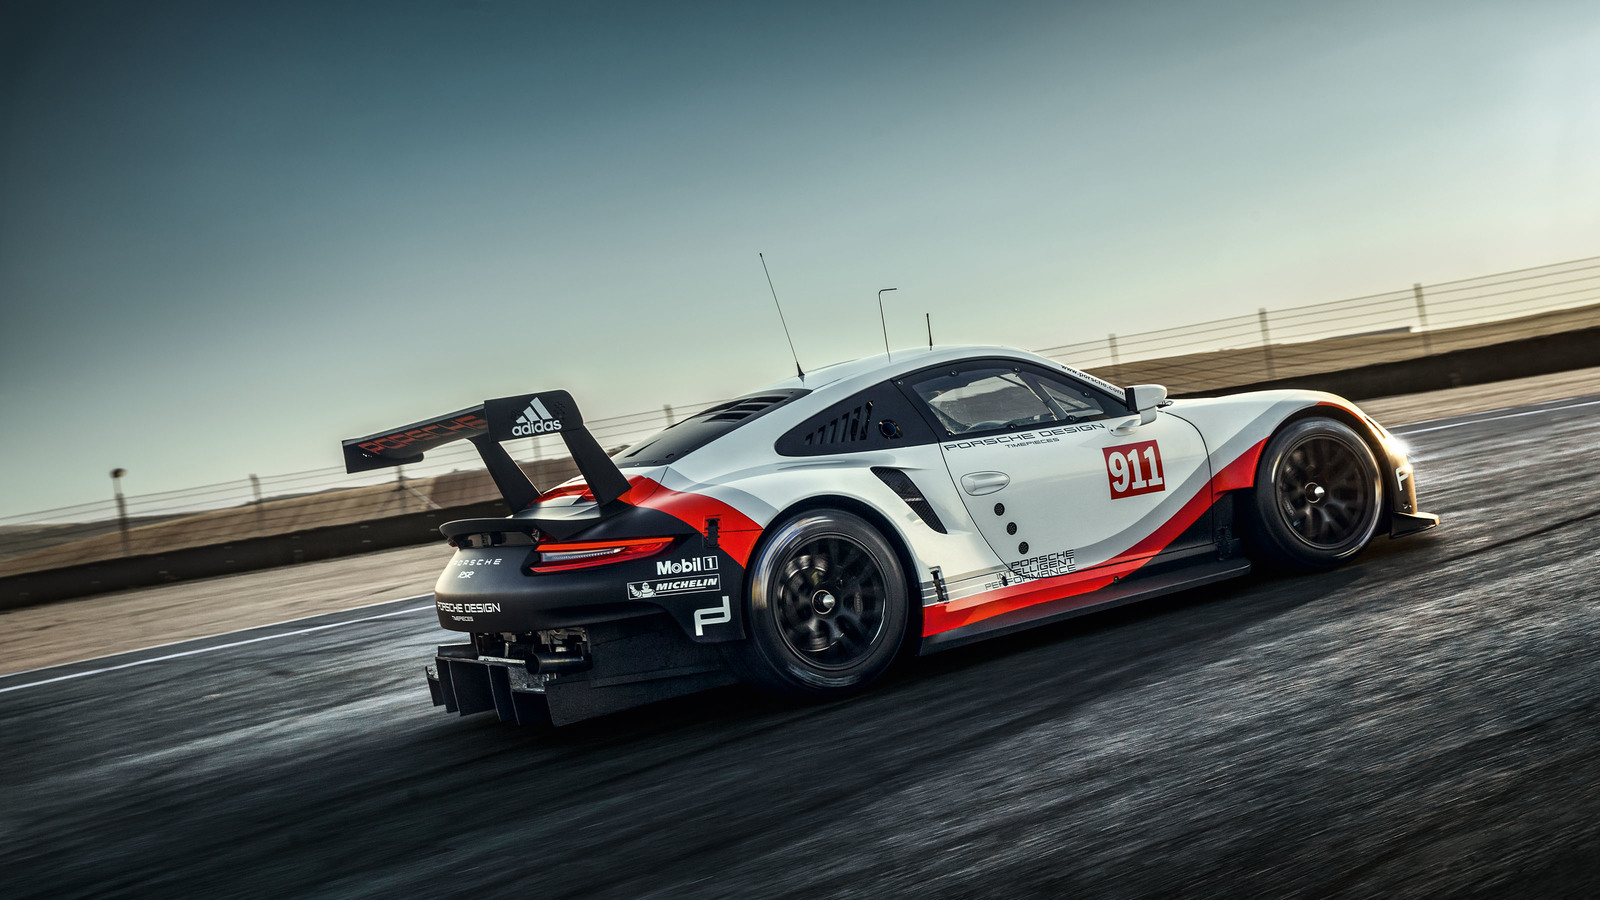 2017 Porsche 911 RSR - race car is now mid-engined porsche-motorsport-image...